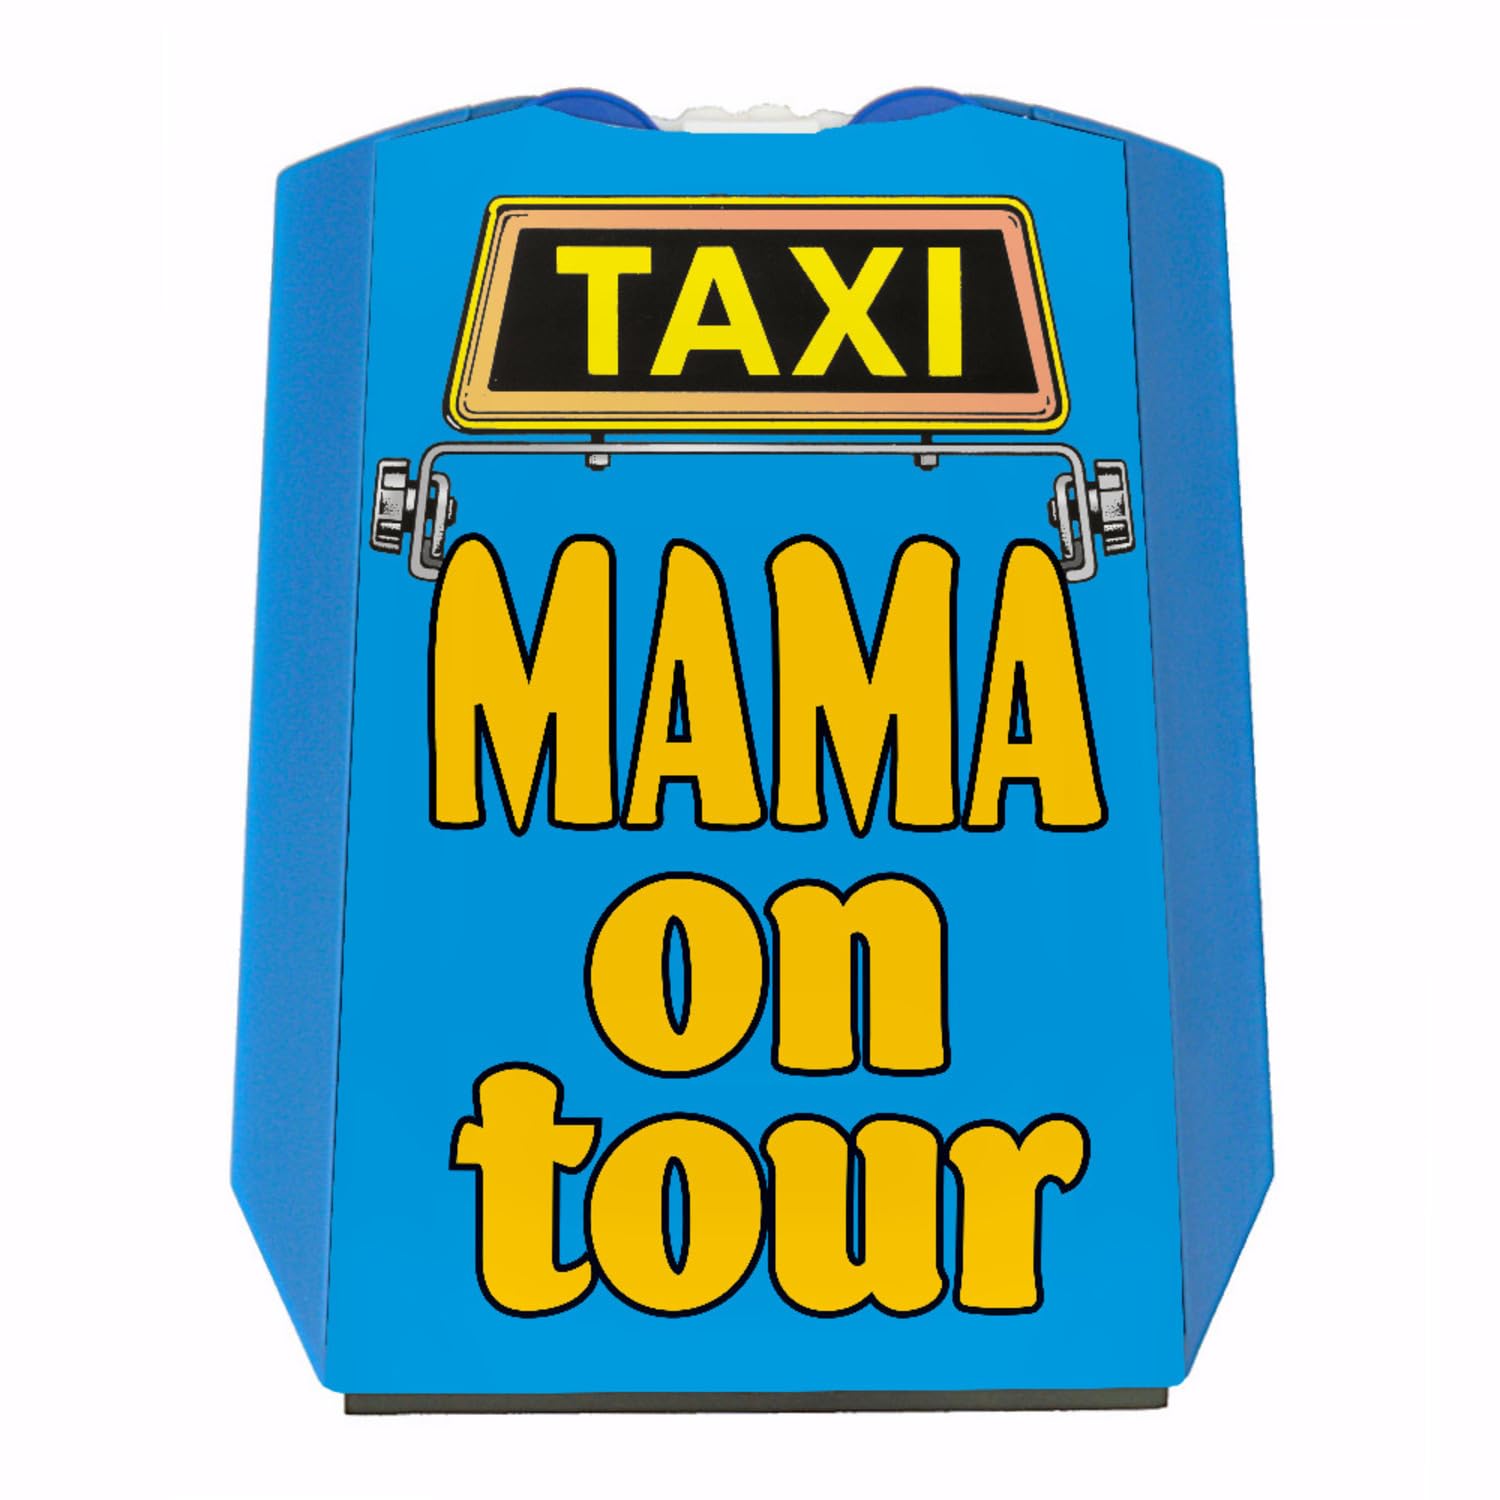 Taxi Mama on Tour Parkscheibe in blau-gelb mit 2 Einkaufswagenchips tolles Muttertagsgeschenk für die Beste Mutti auf der Welt von speecheese